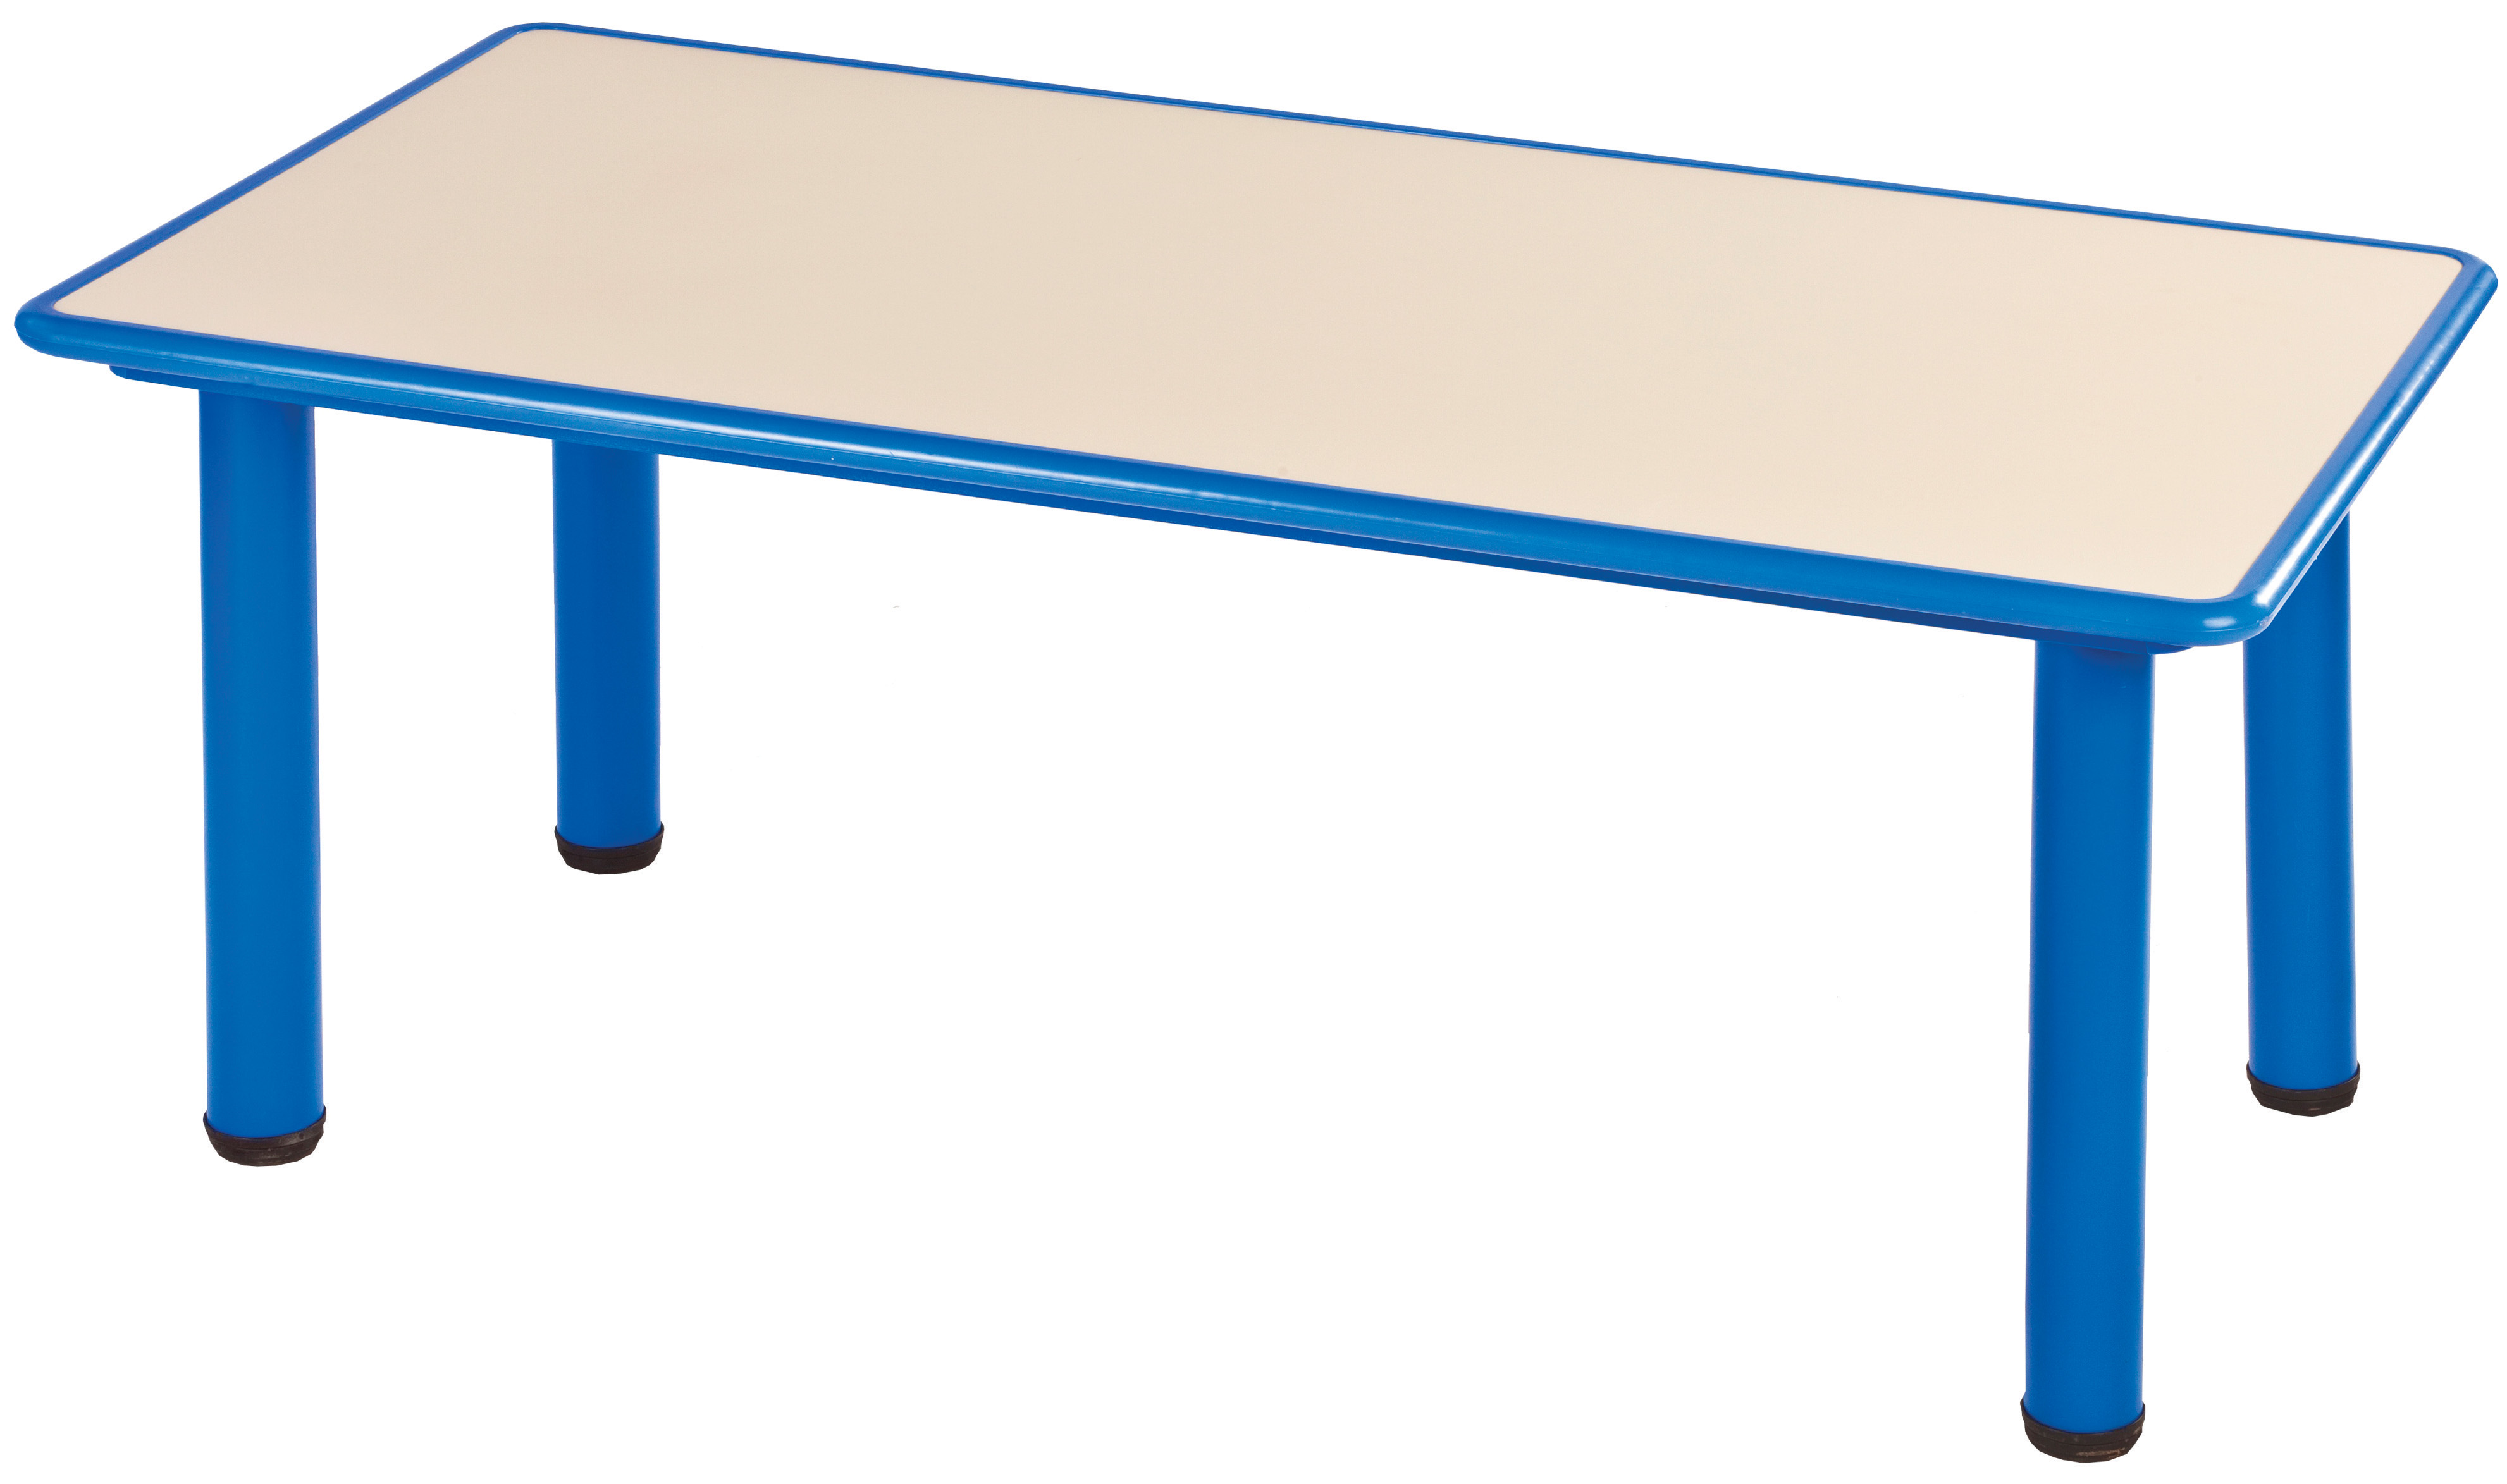 שולחן קנט פלסטיק 120*60 - כחול - תמונה מספר 1